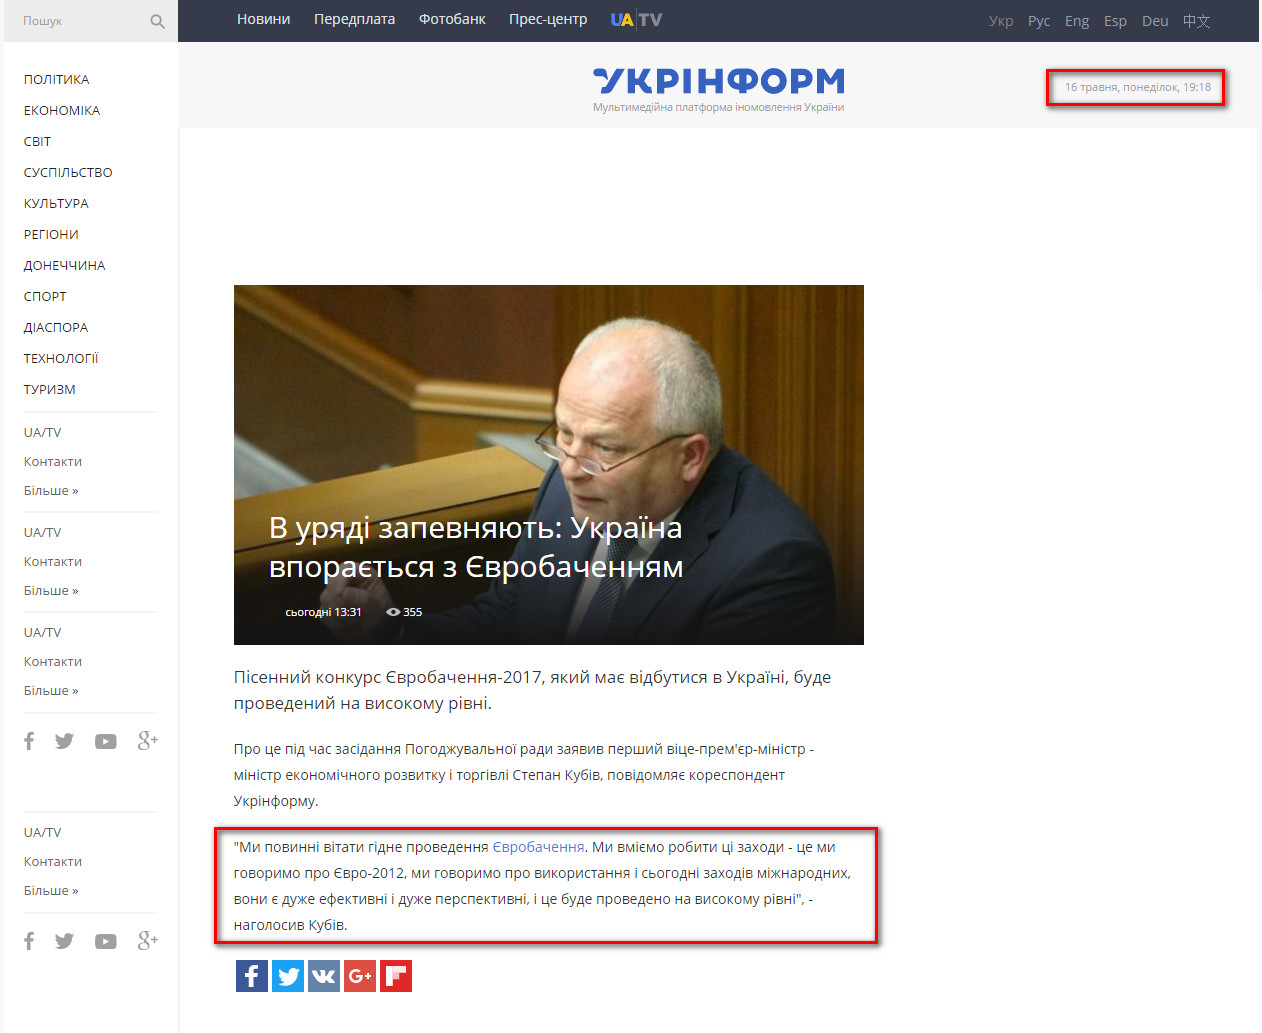 http://www.ukrinform.ua/rubric-politycs/2017789-v-uradi-zapevnaut-ukraina-vporaetsa-z-evrobacennam.html